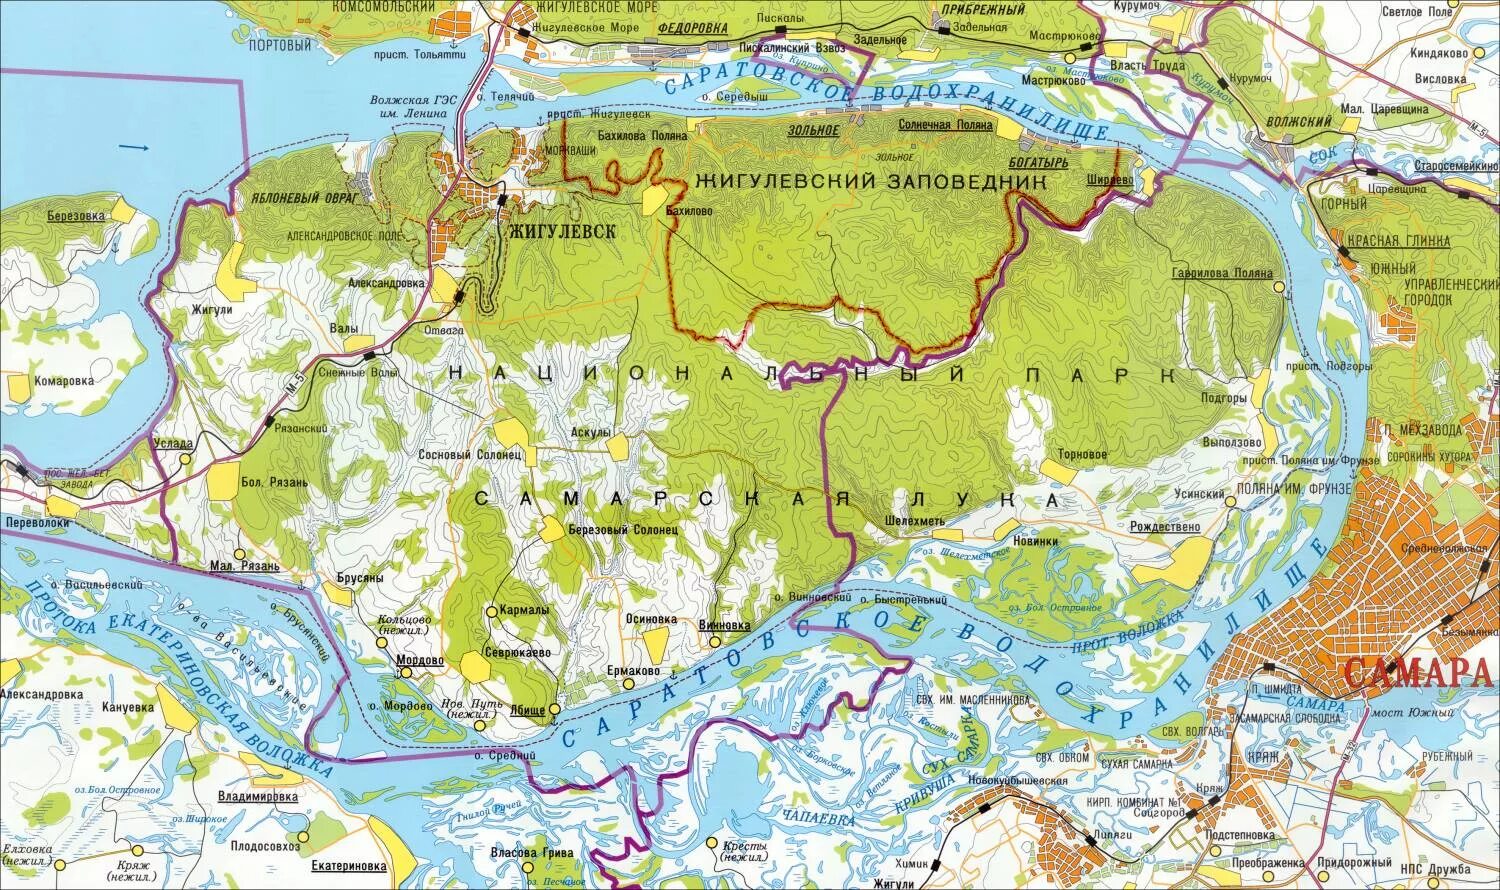 Карта Жигулевского заповедника и Самарской Луки.